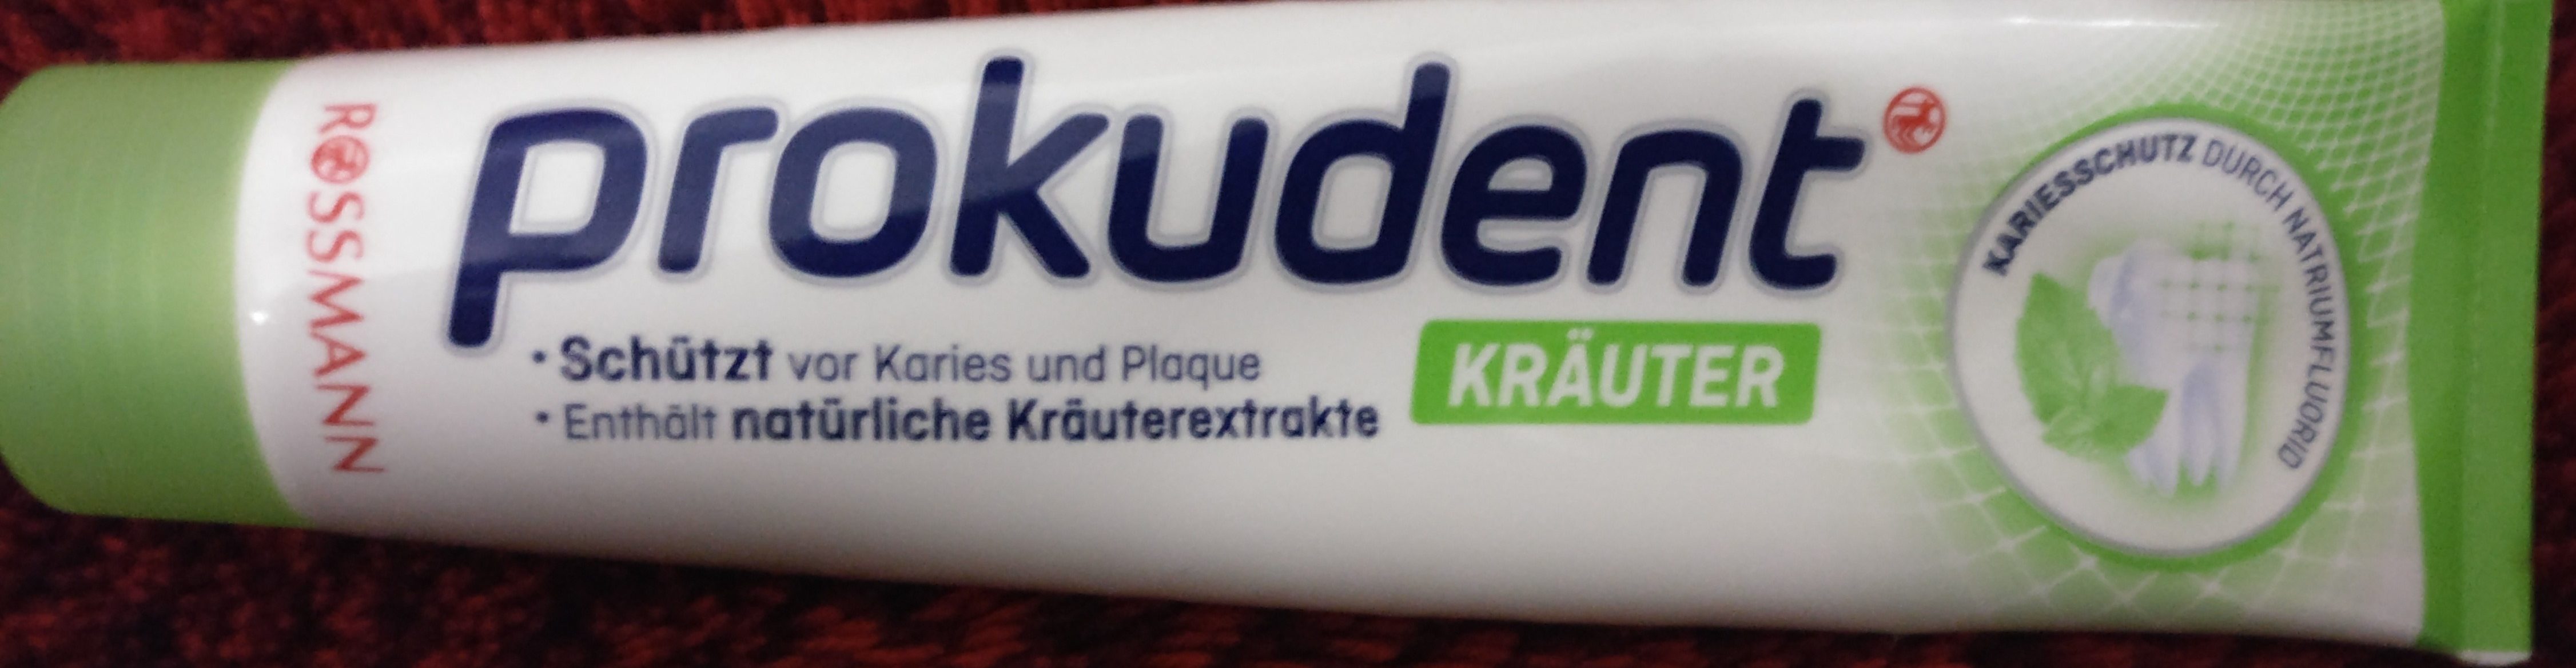 prokudent Kräuter - Product - en